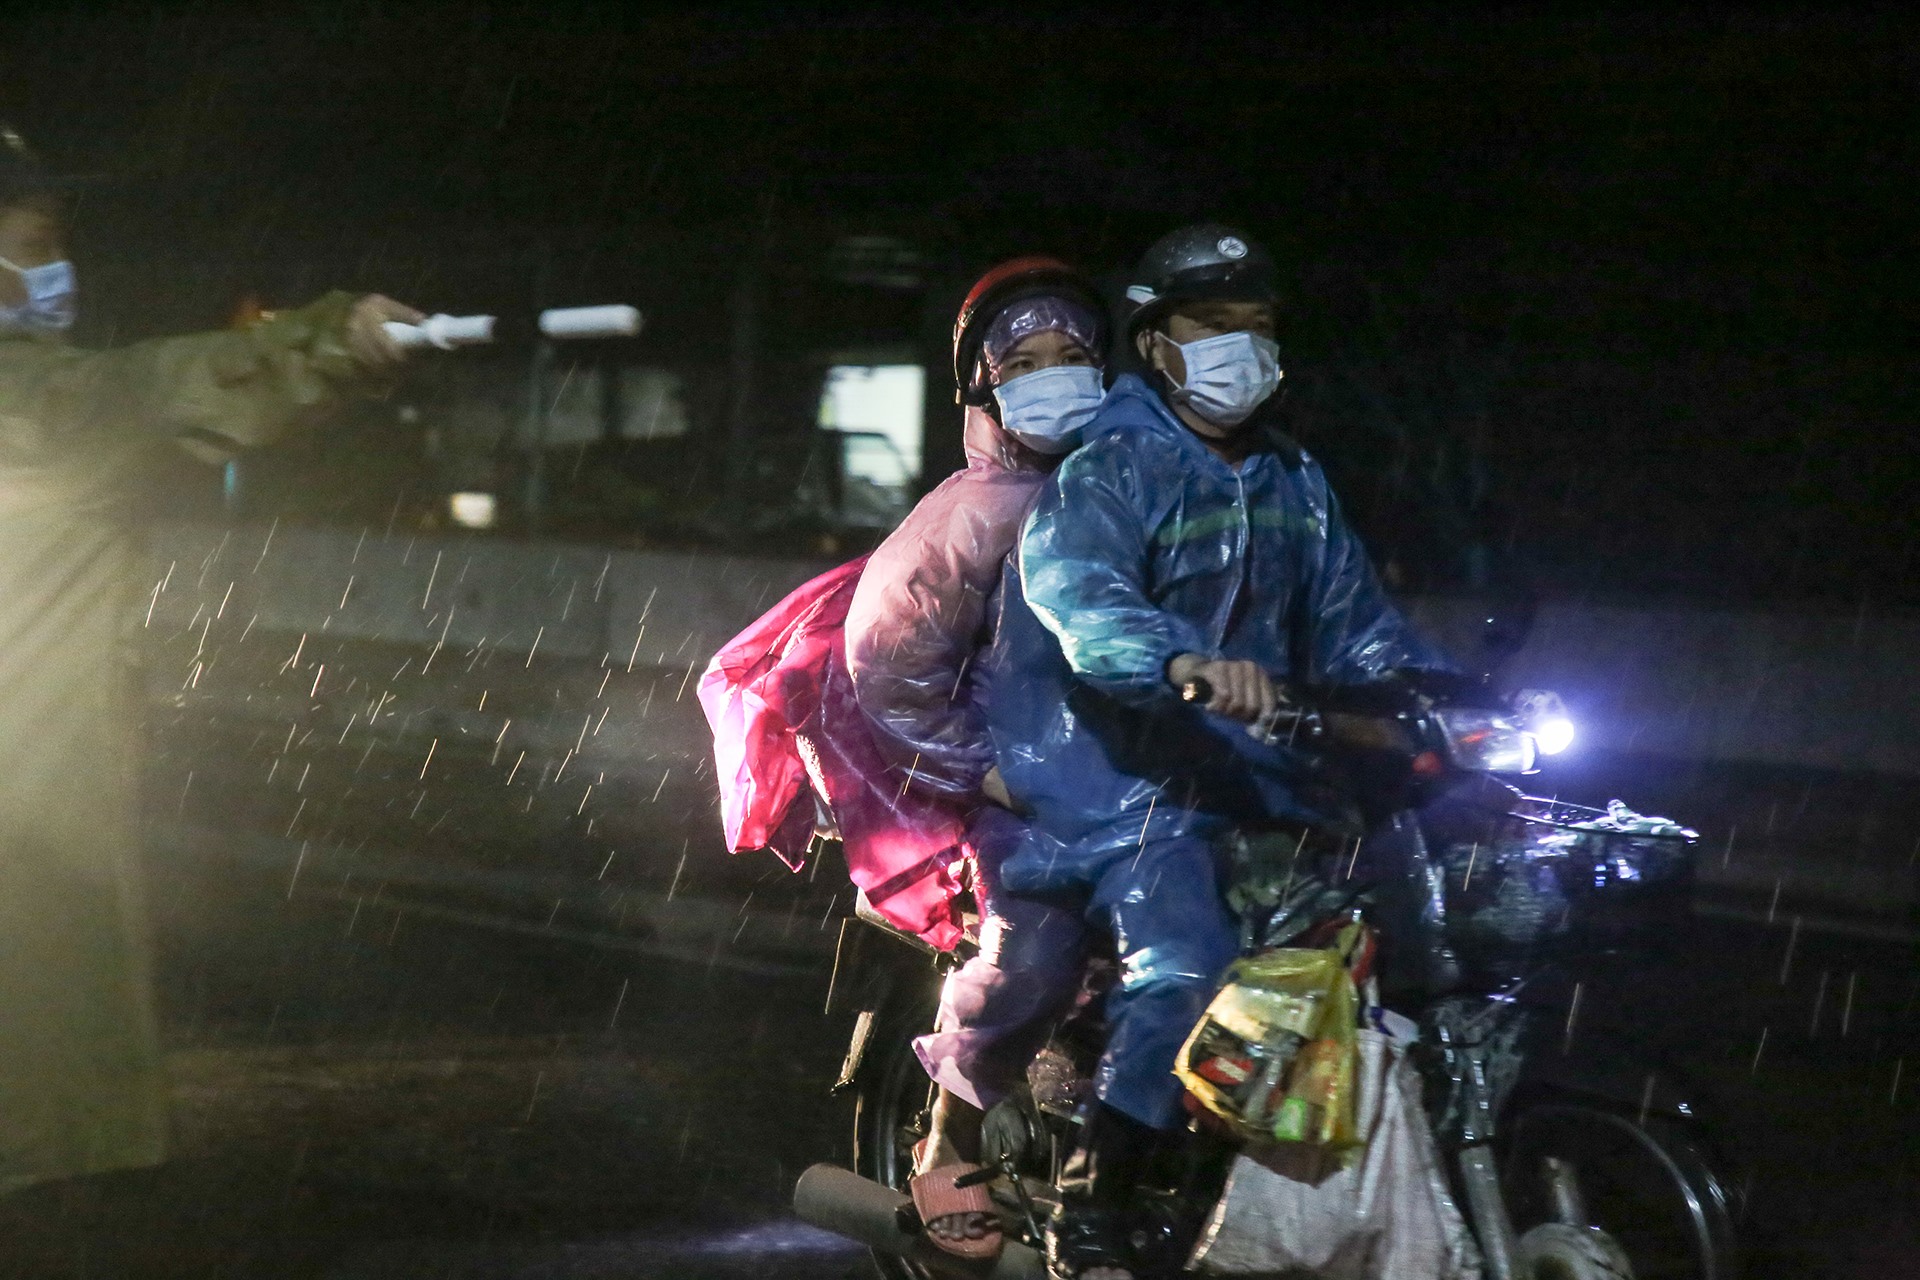 Thời tiết có mưa gây khó khăn nhiều cho các đoàn xe máy về quê